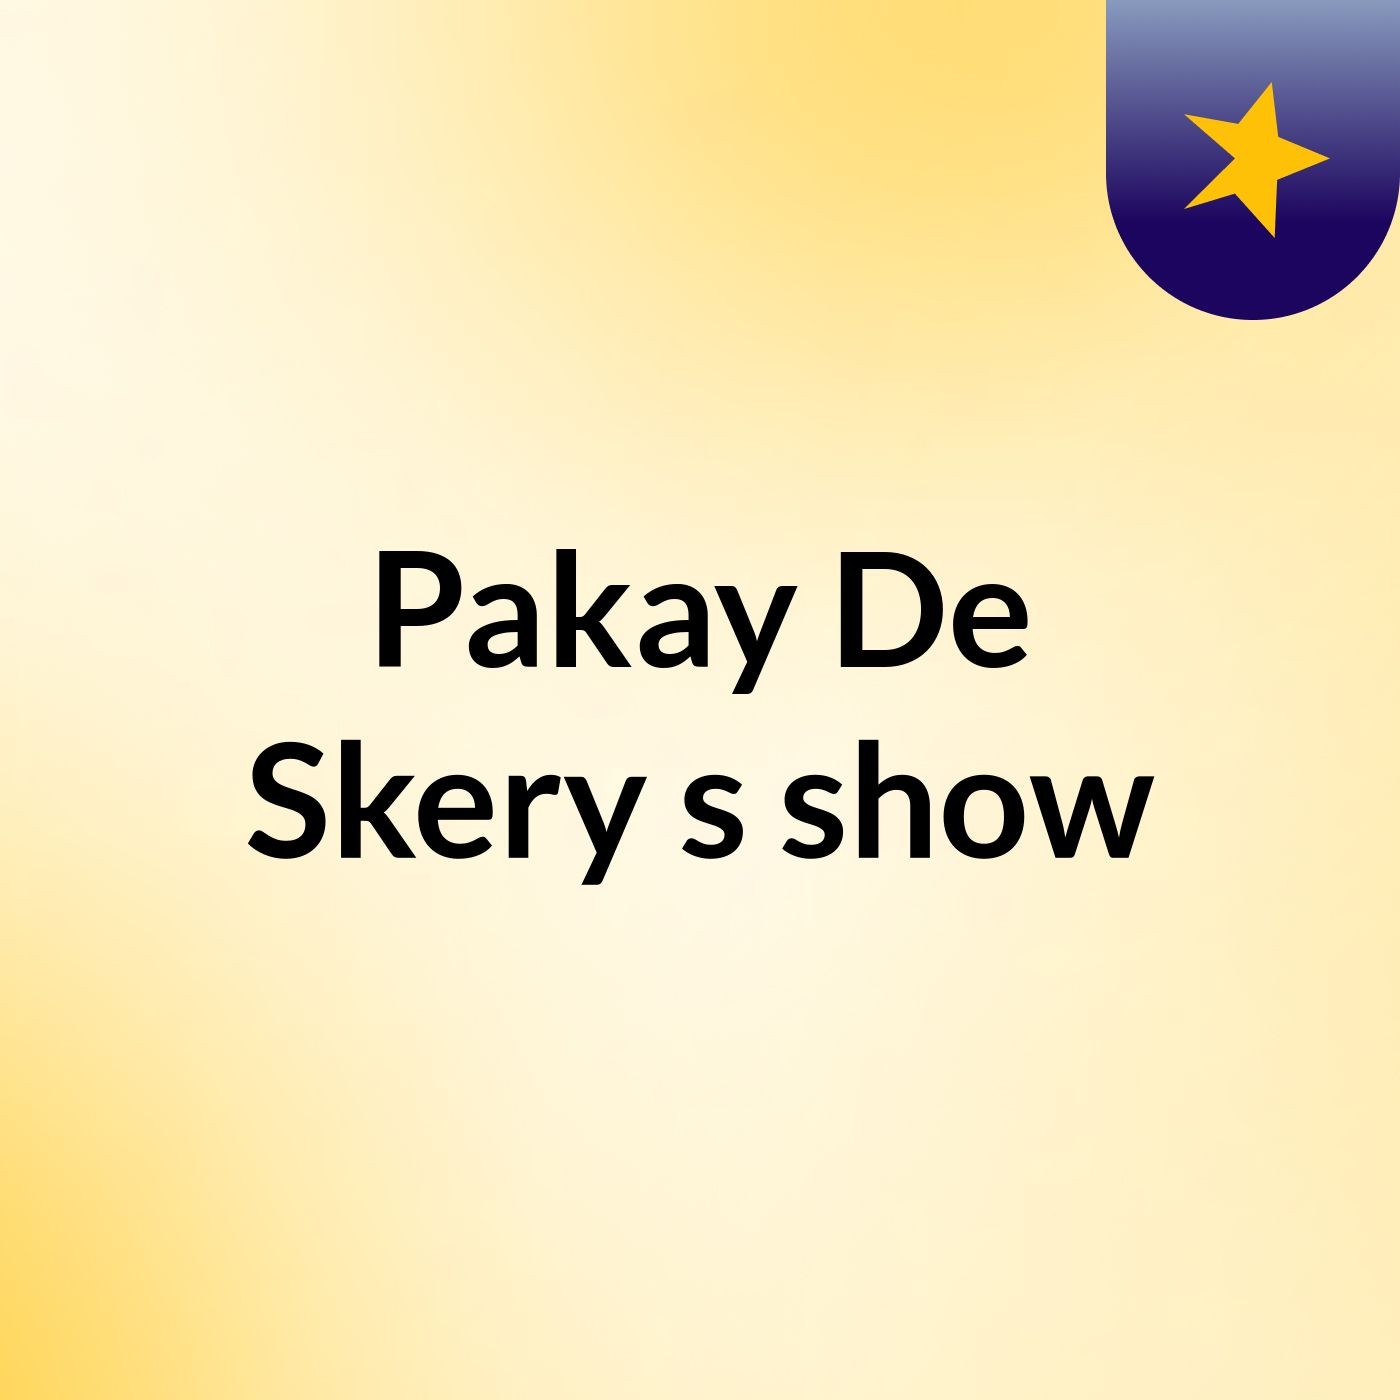 Pakay De Skery's show